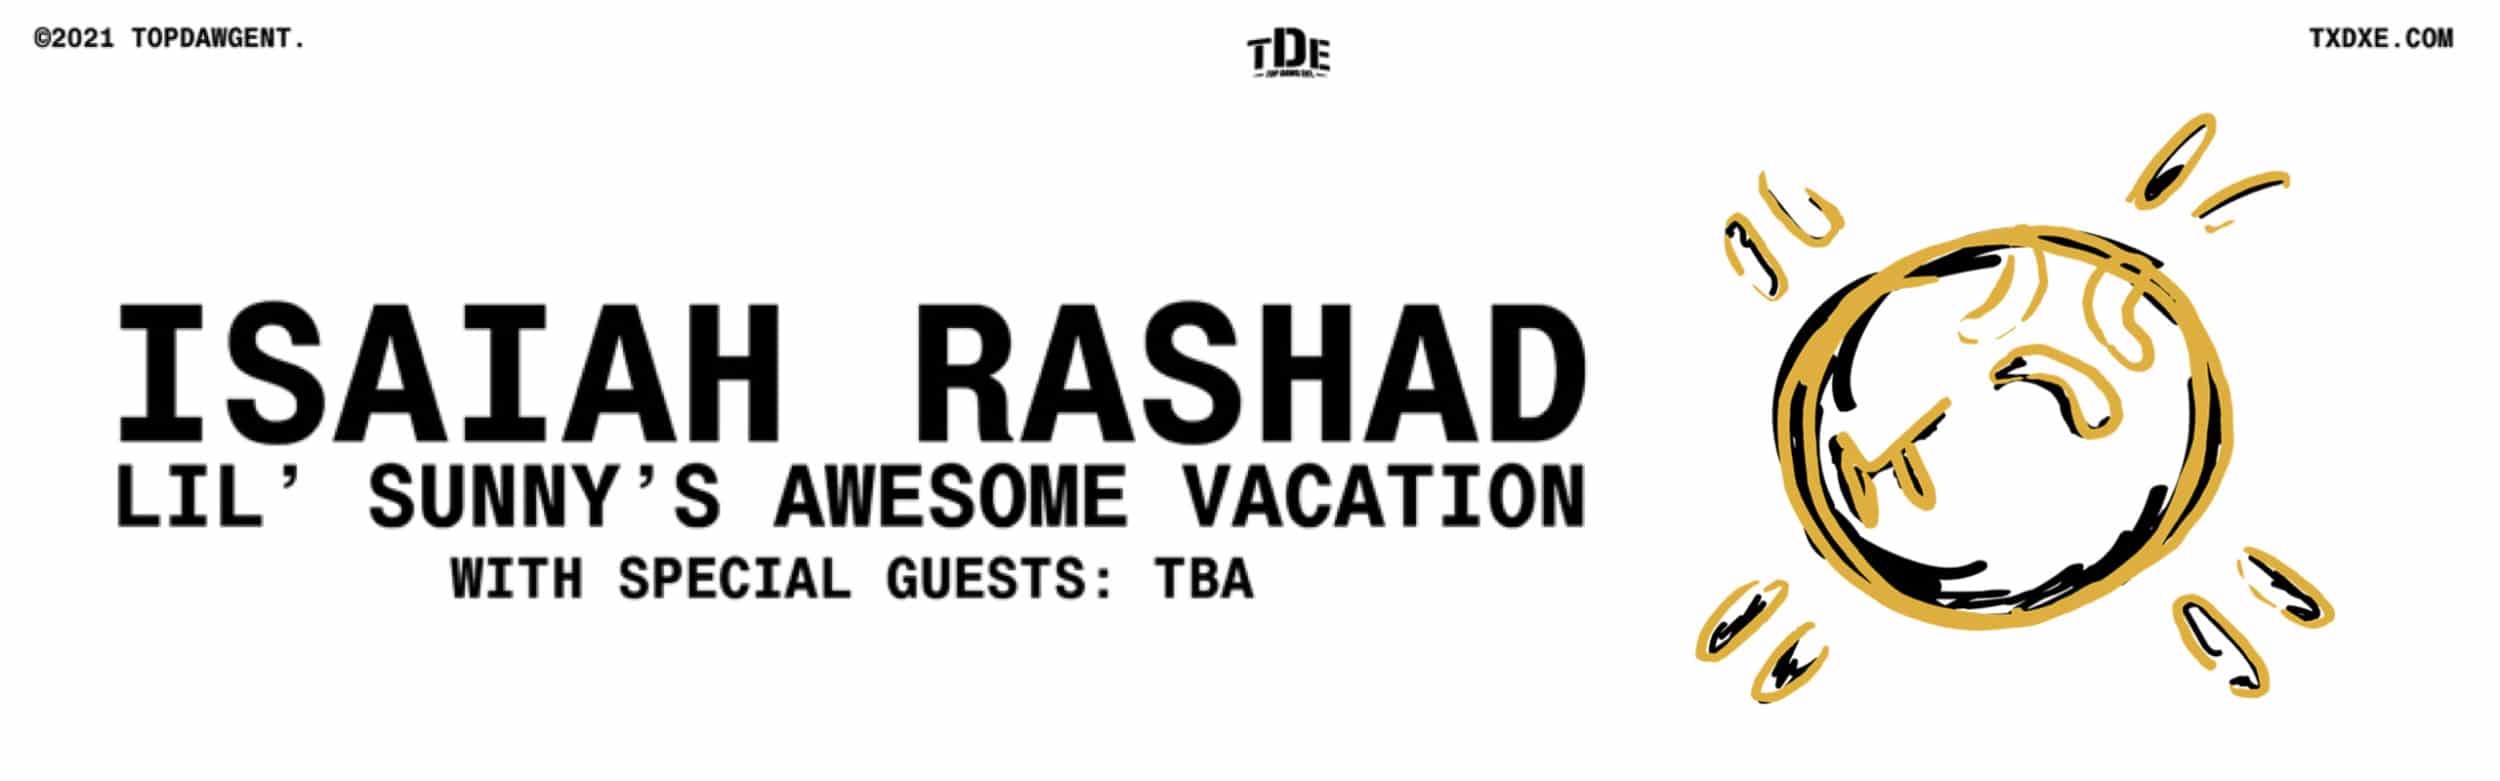 Isaiah Rashad banner